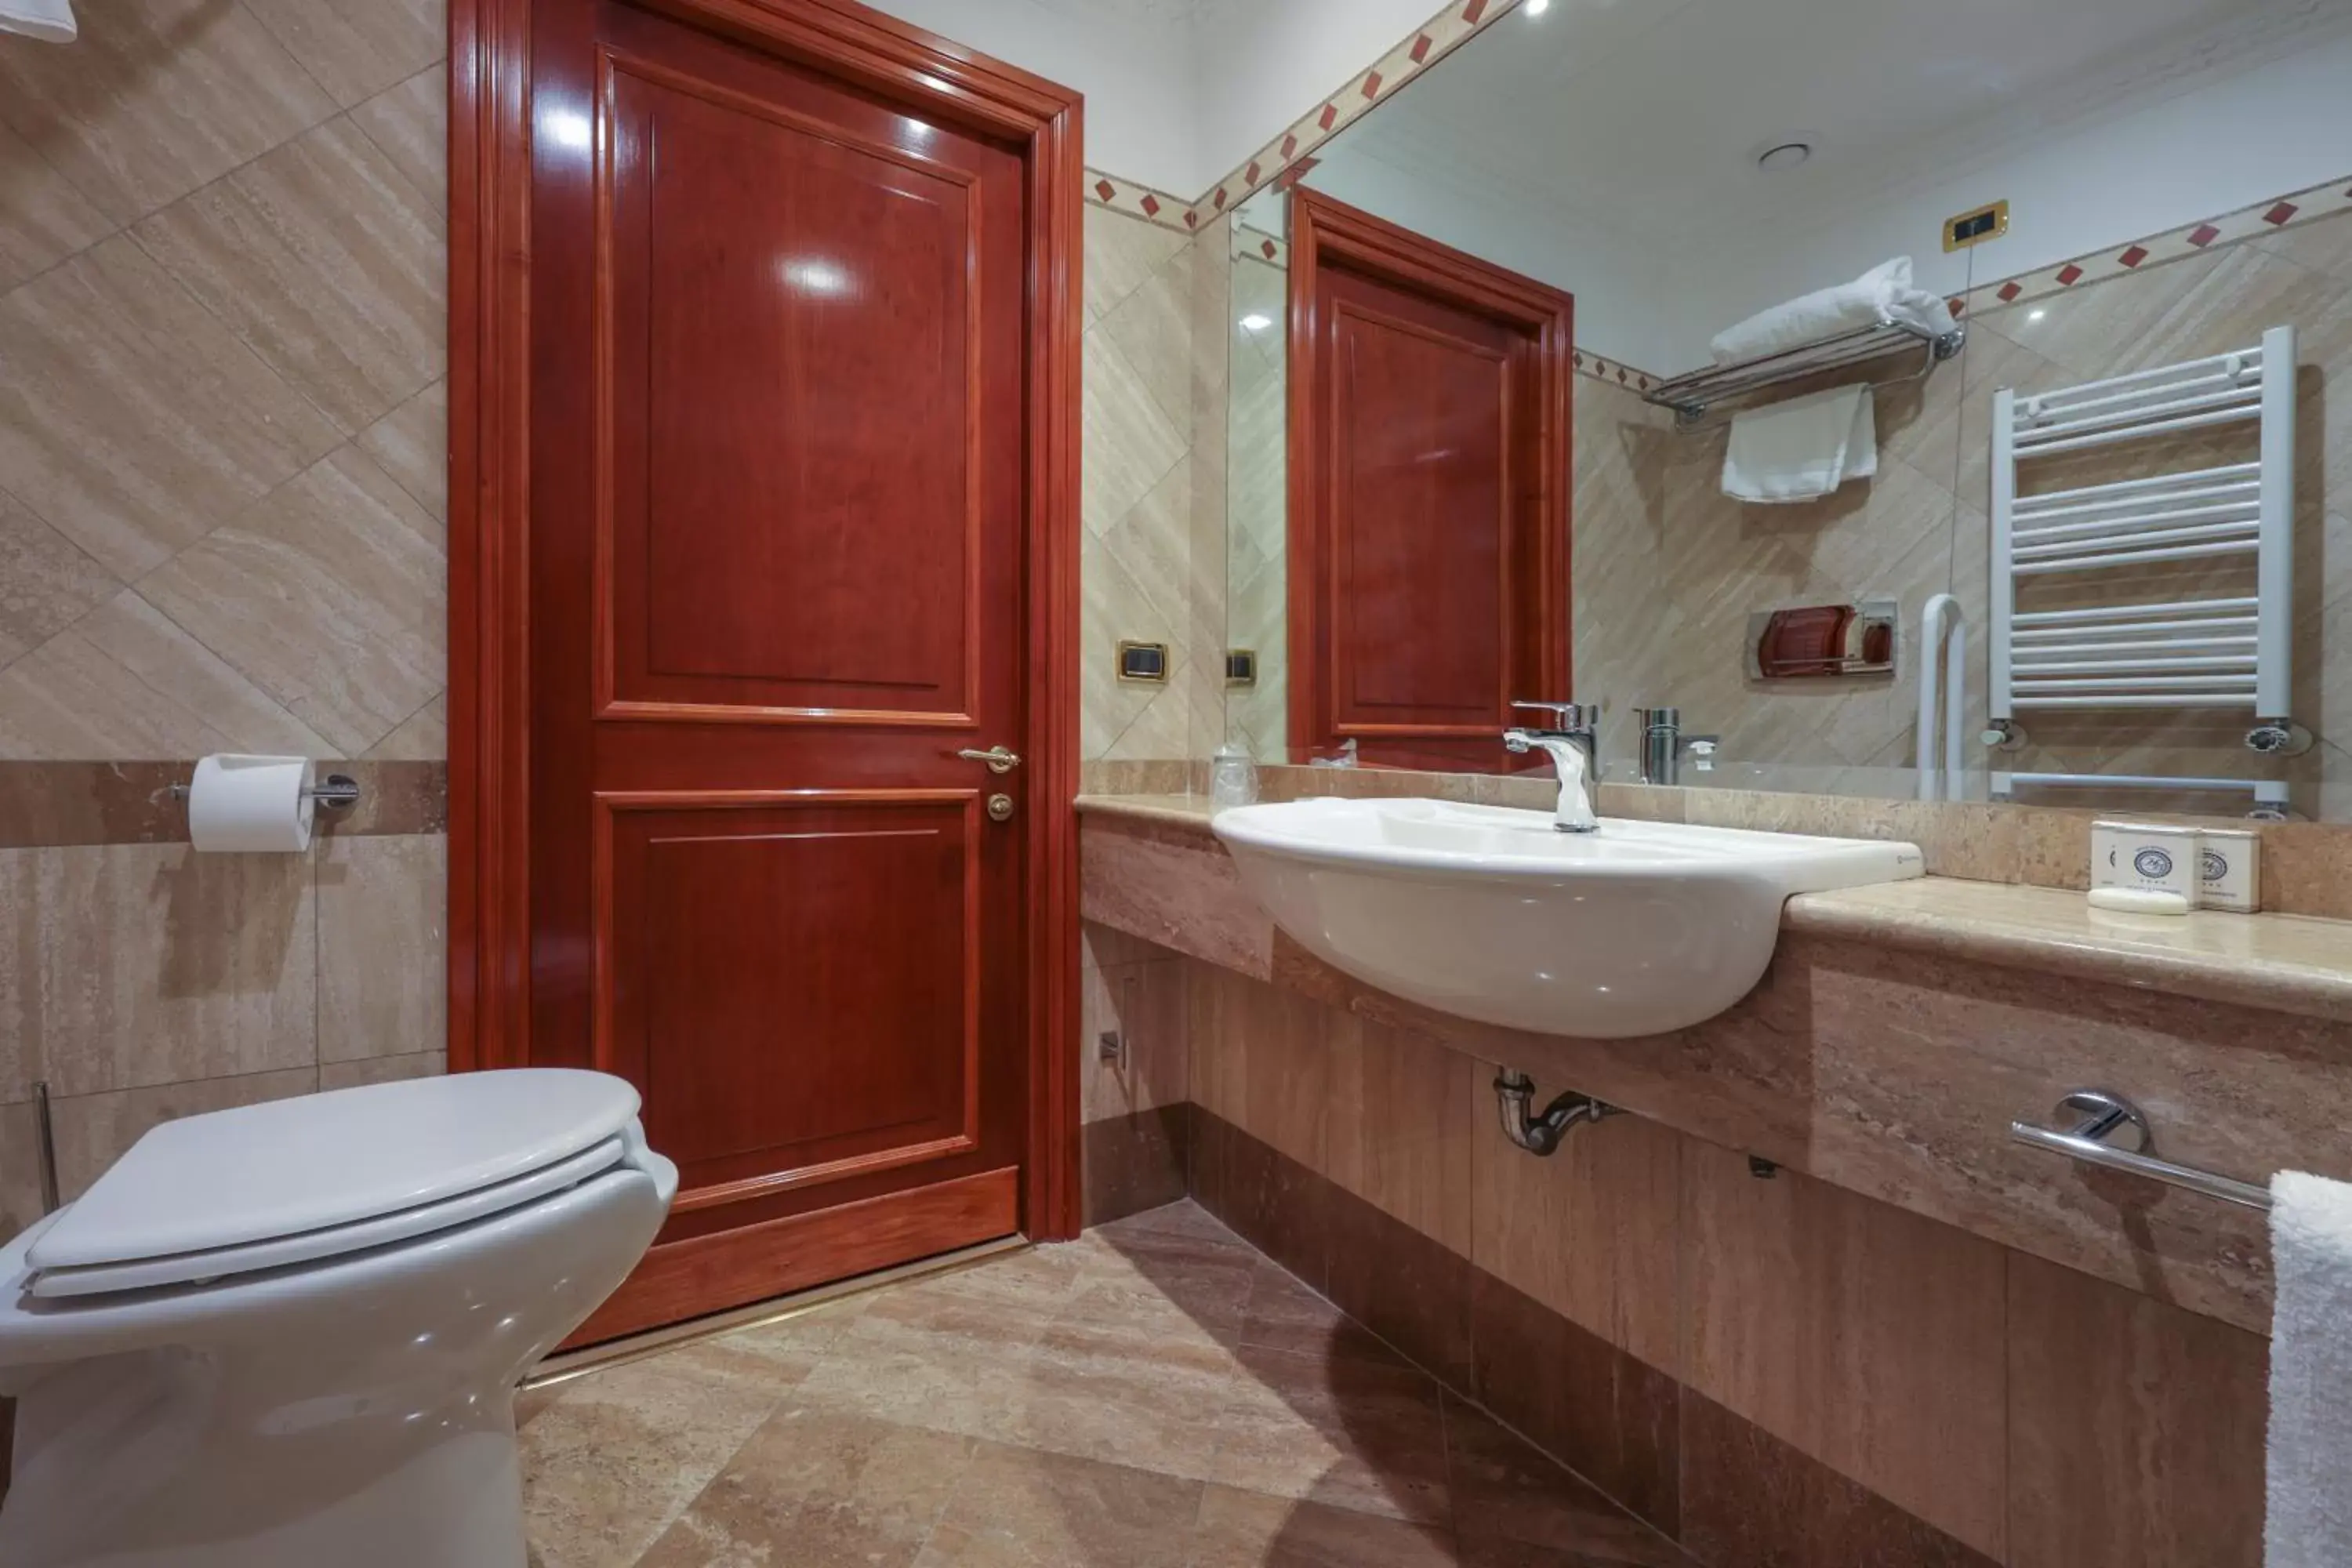 Bathroom in Hotel Barberini